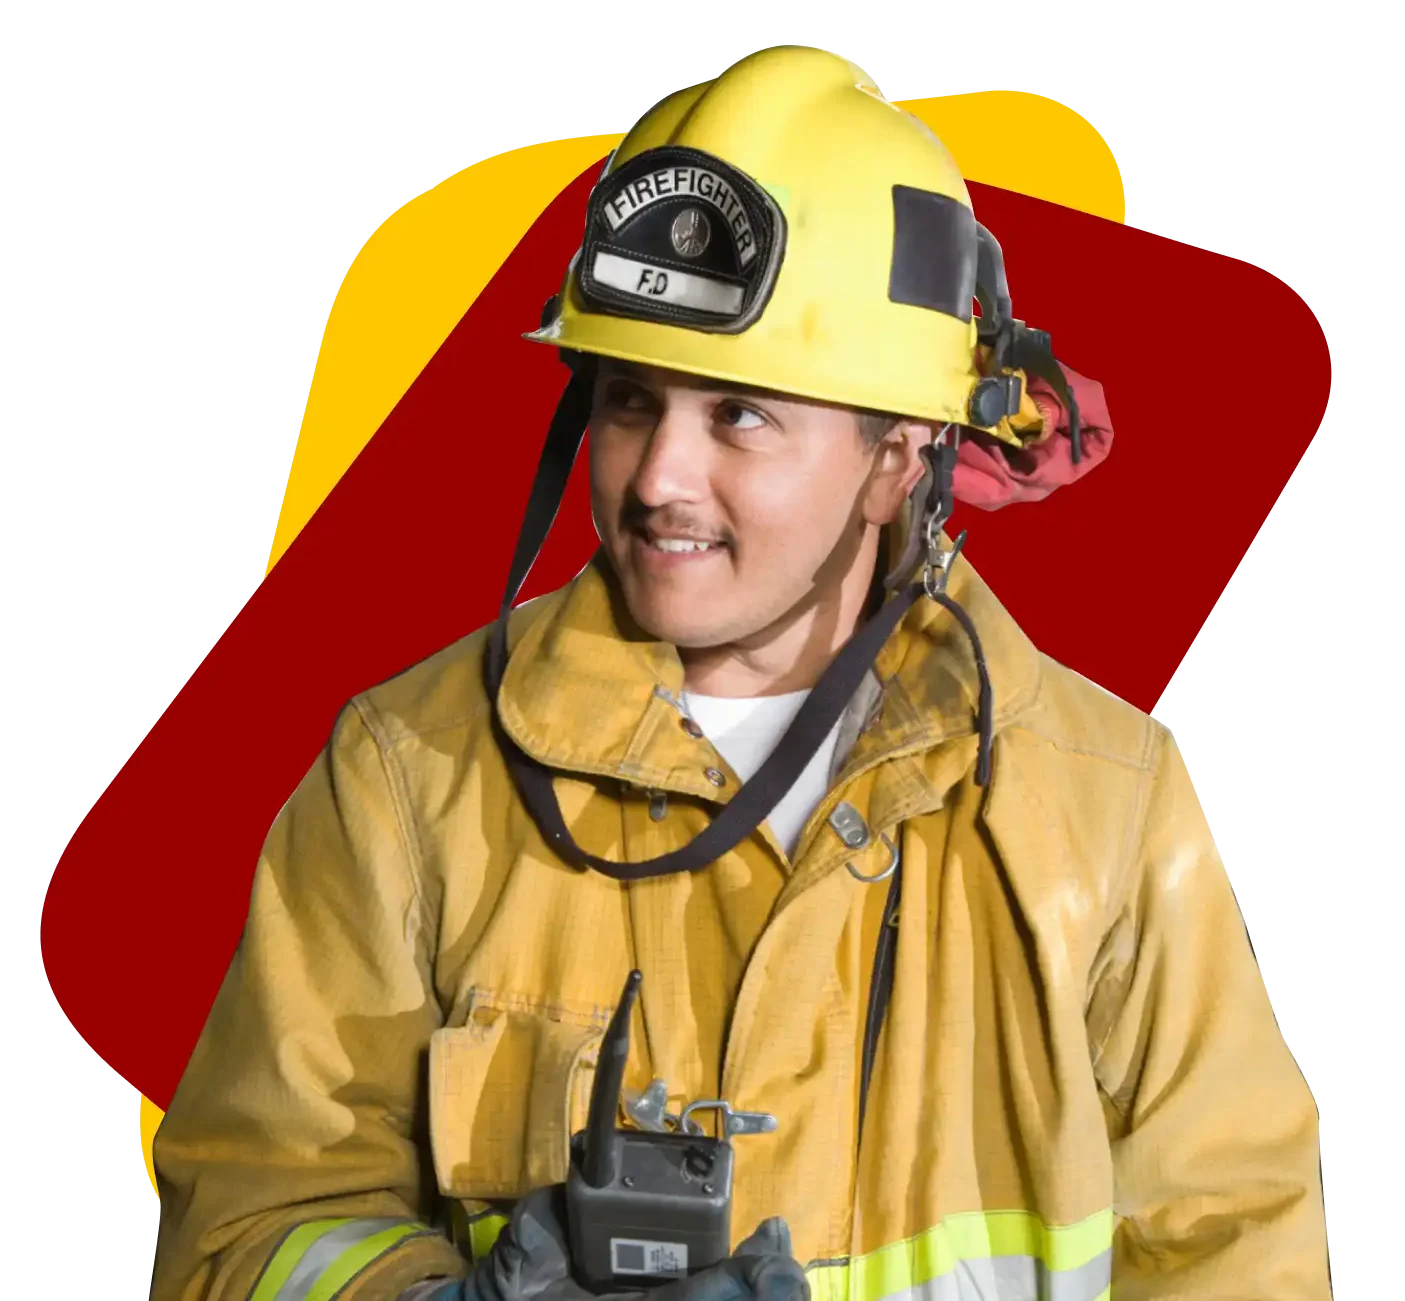 Fire Department Asset Management Software